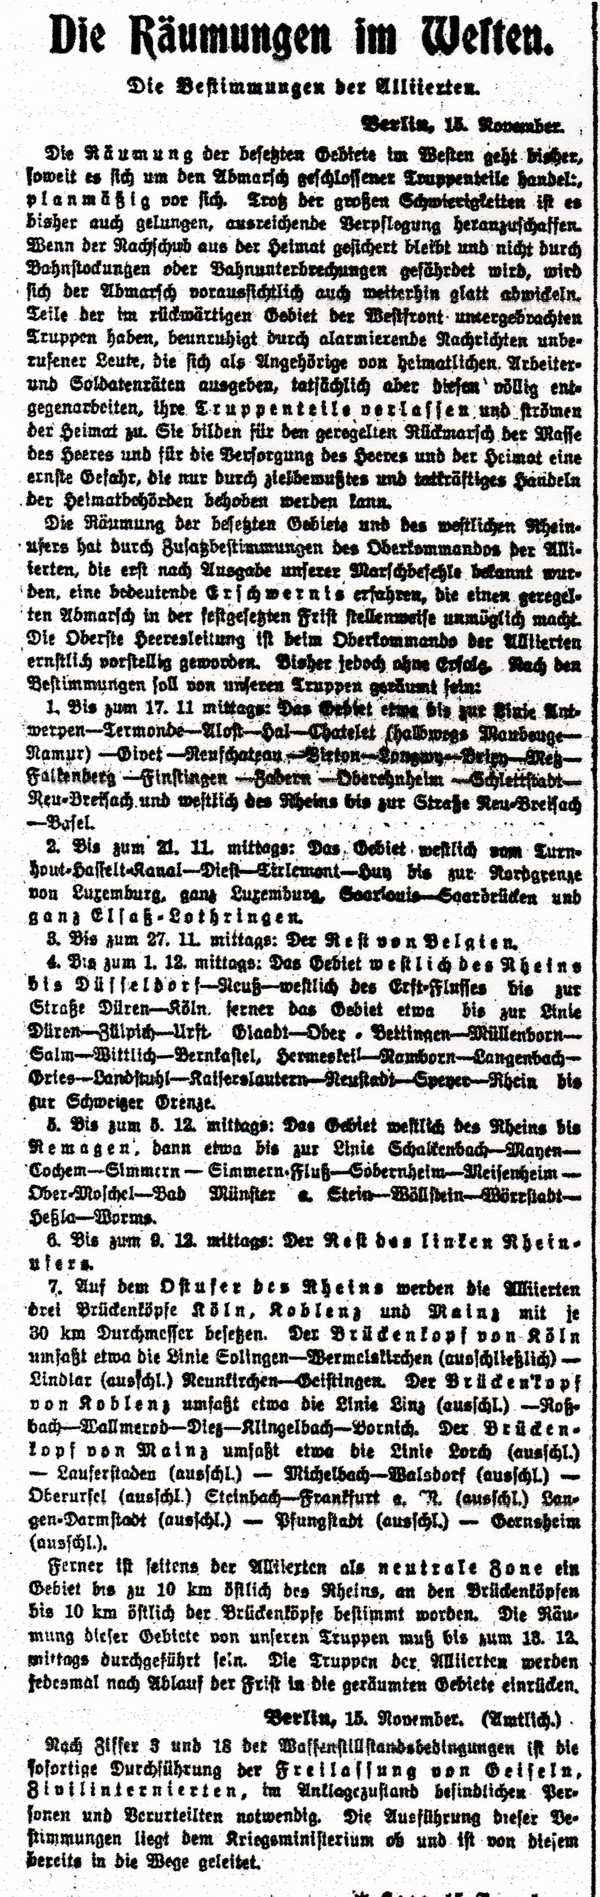 1918-11-16-dRumungen im Westen-VOS - Kopie